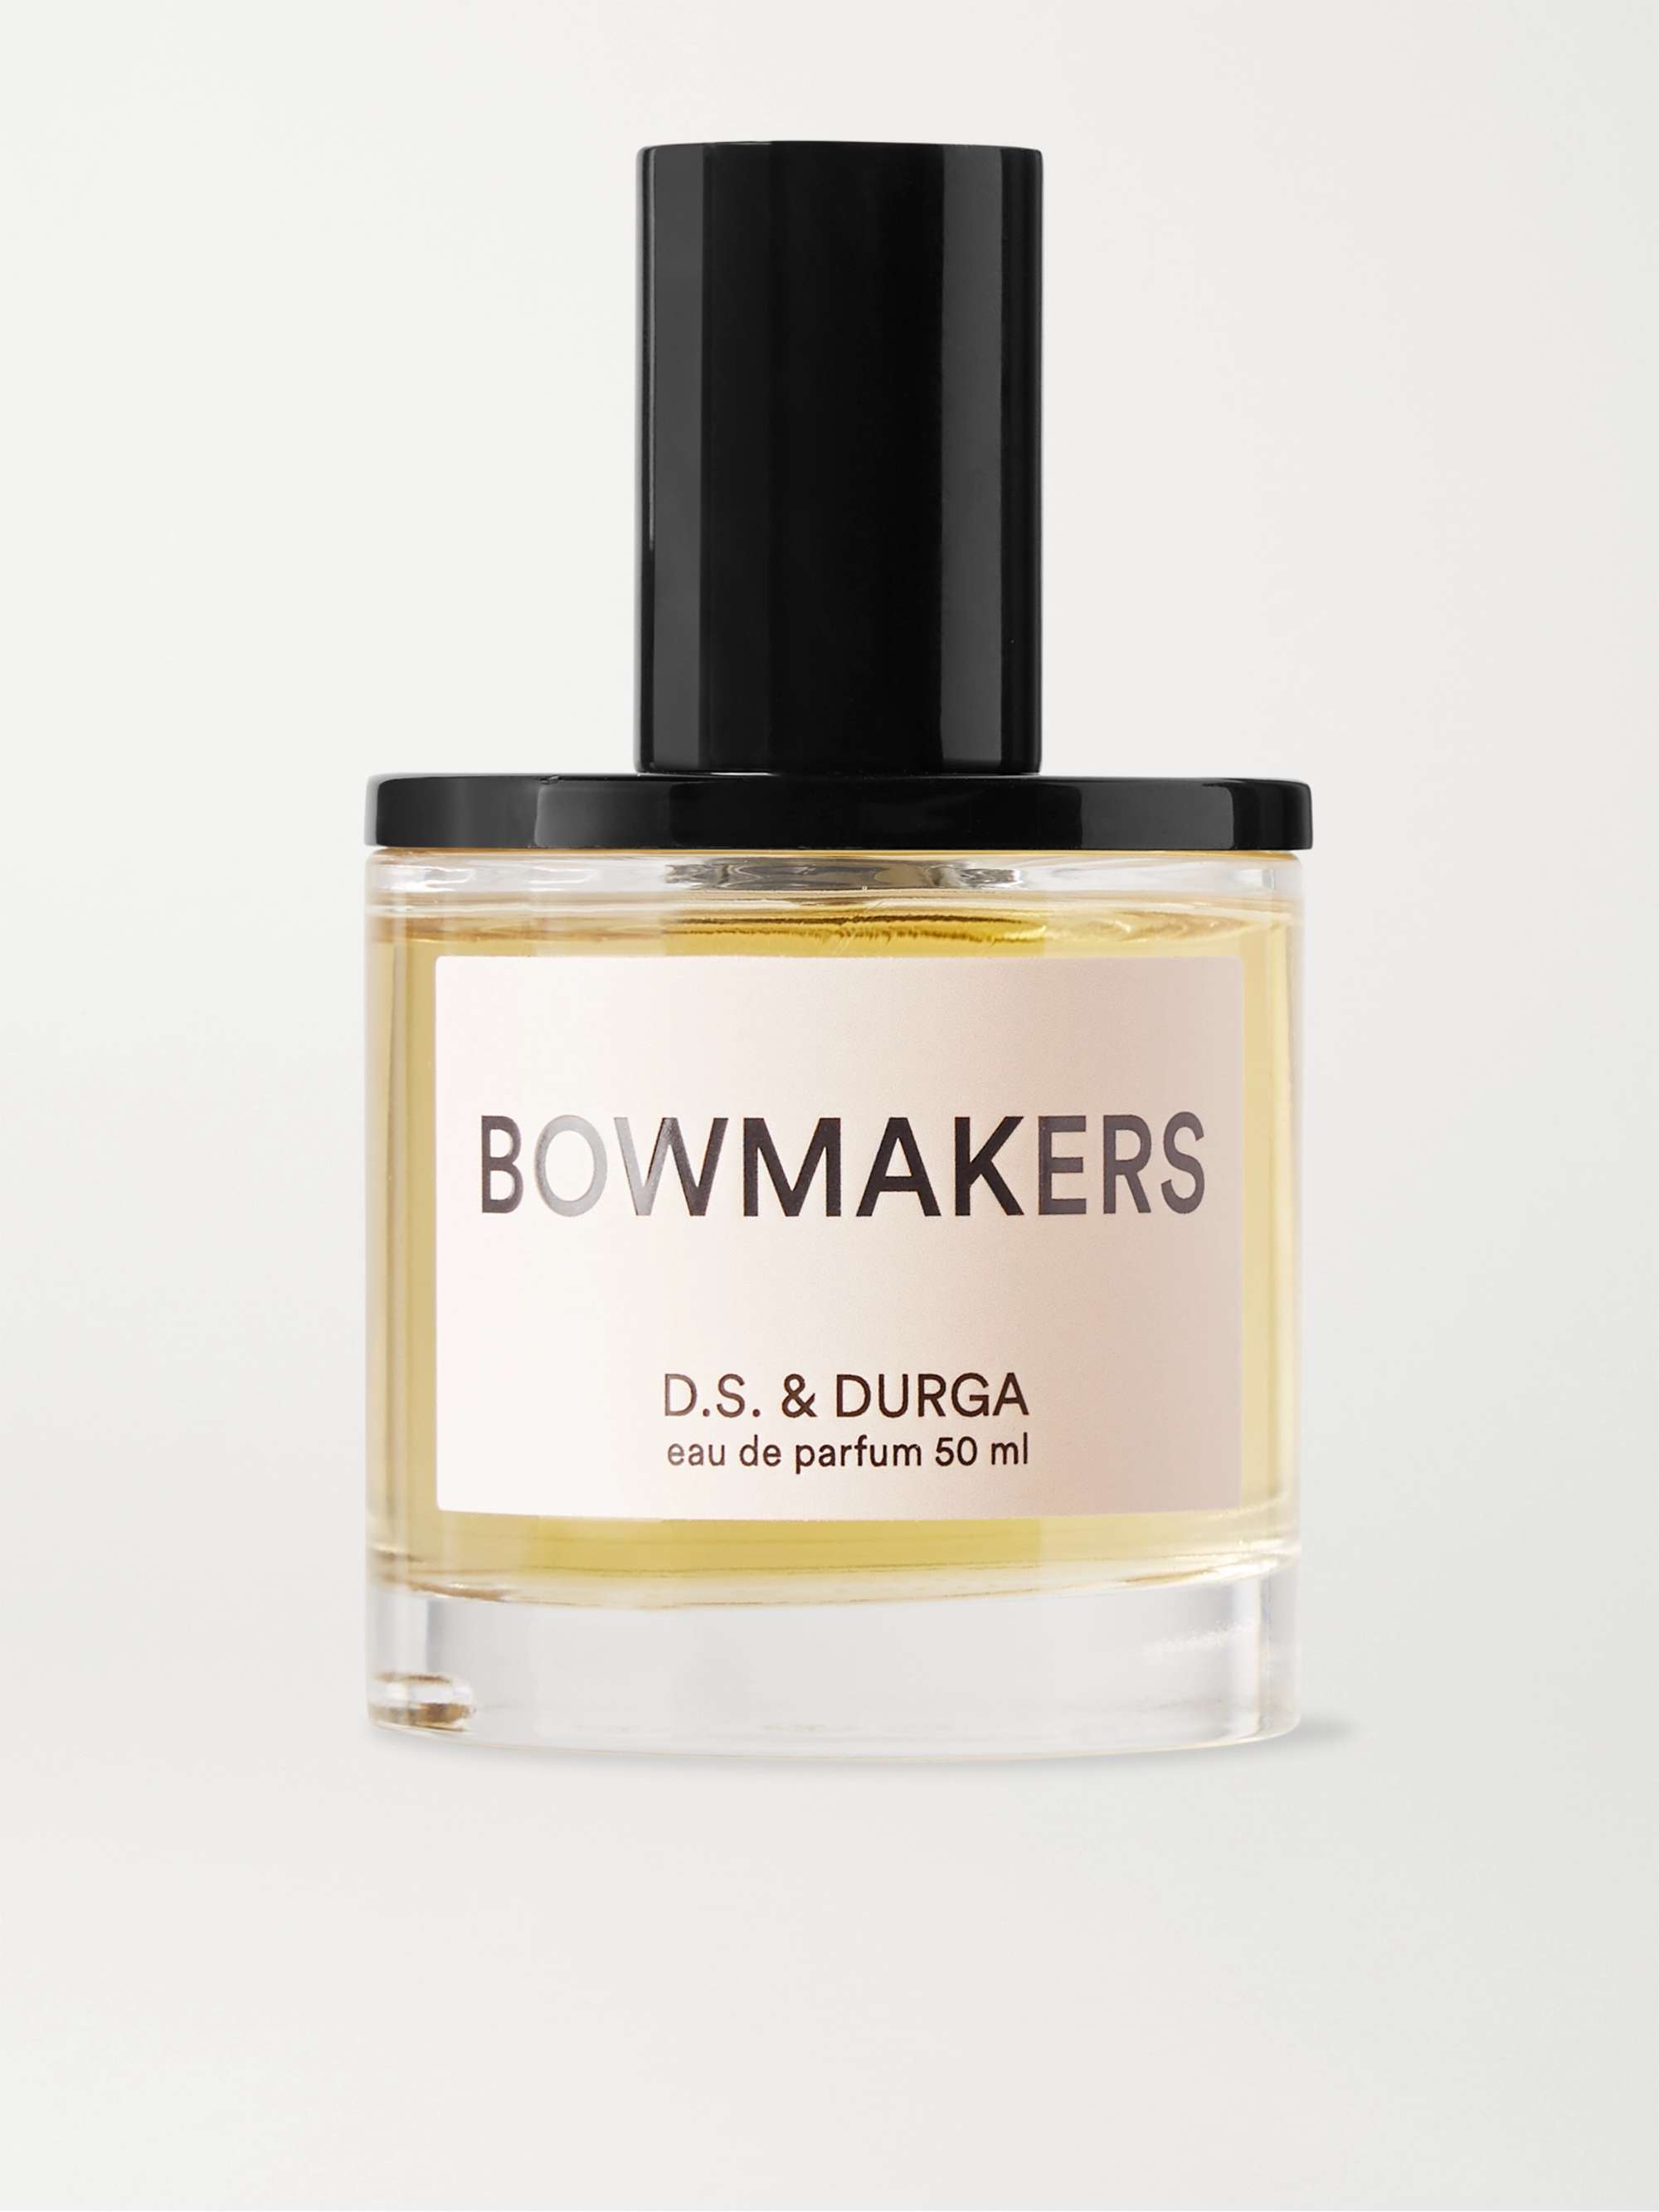 D.S. & DURGA Eau de Parfum - Bowmakers, 50ml